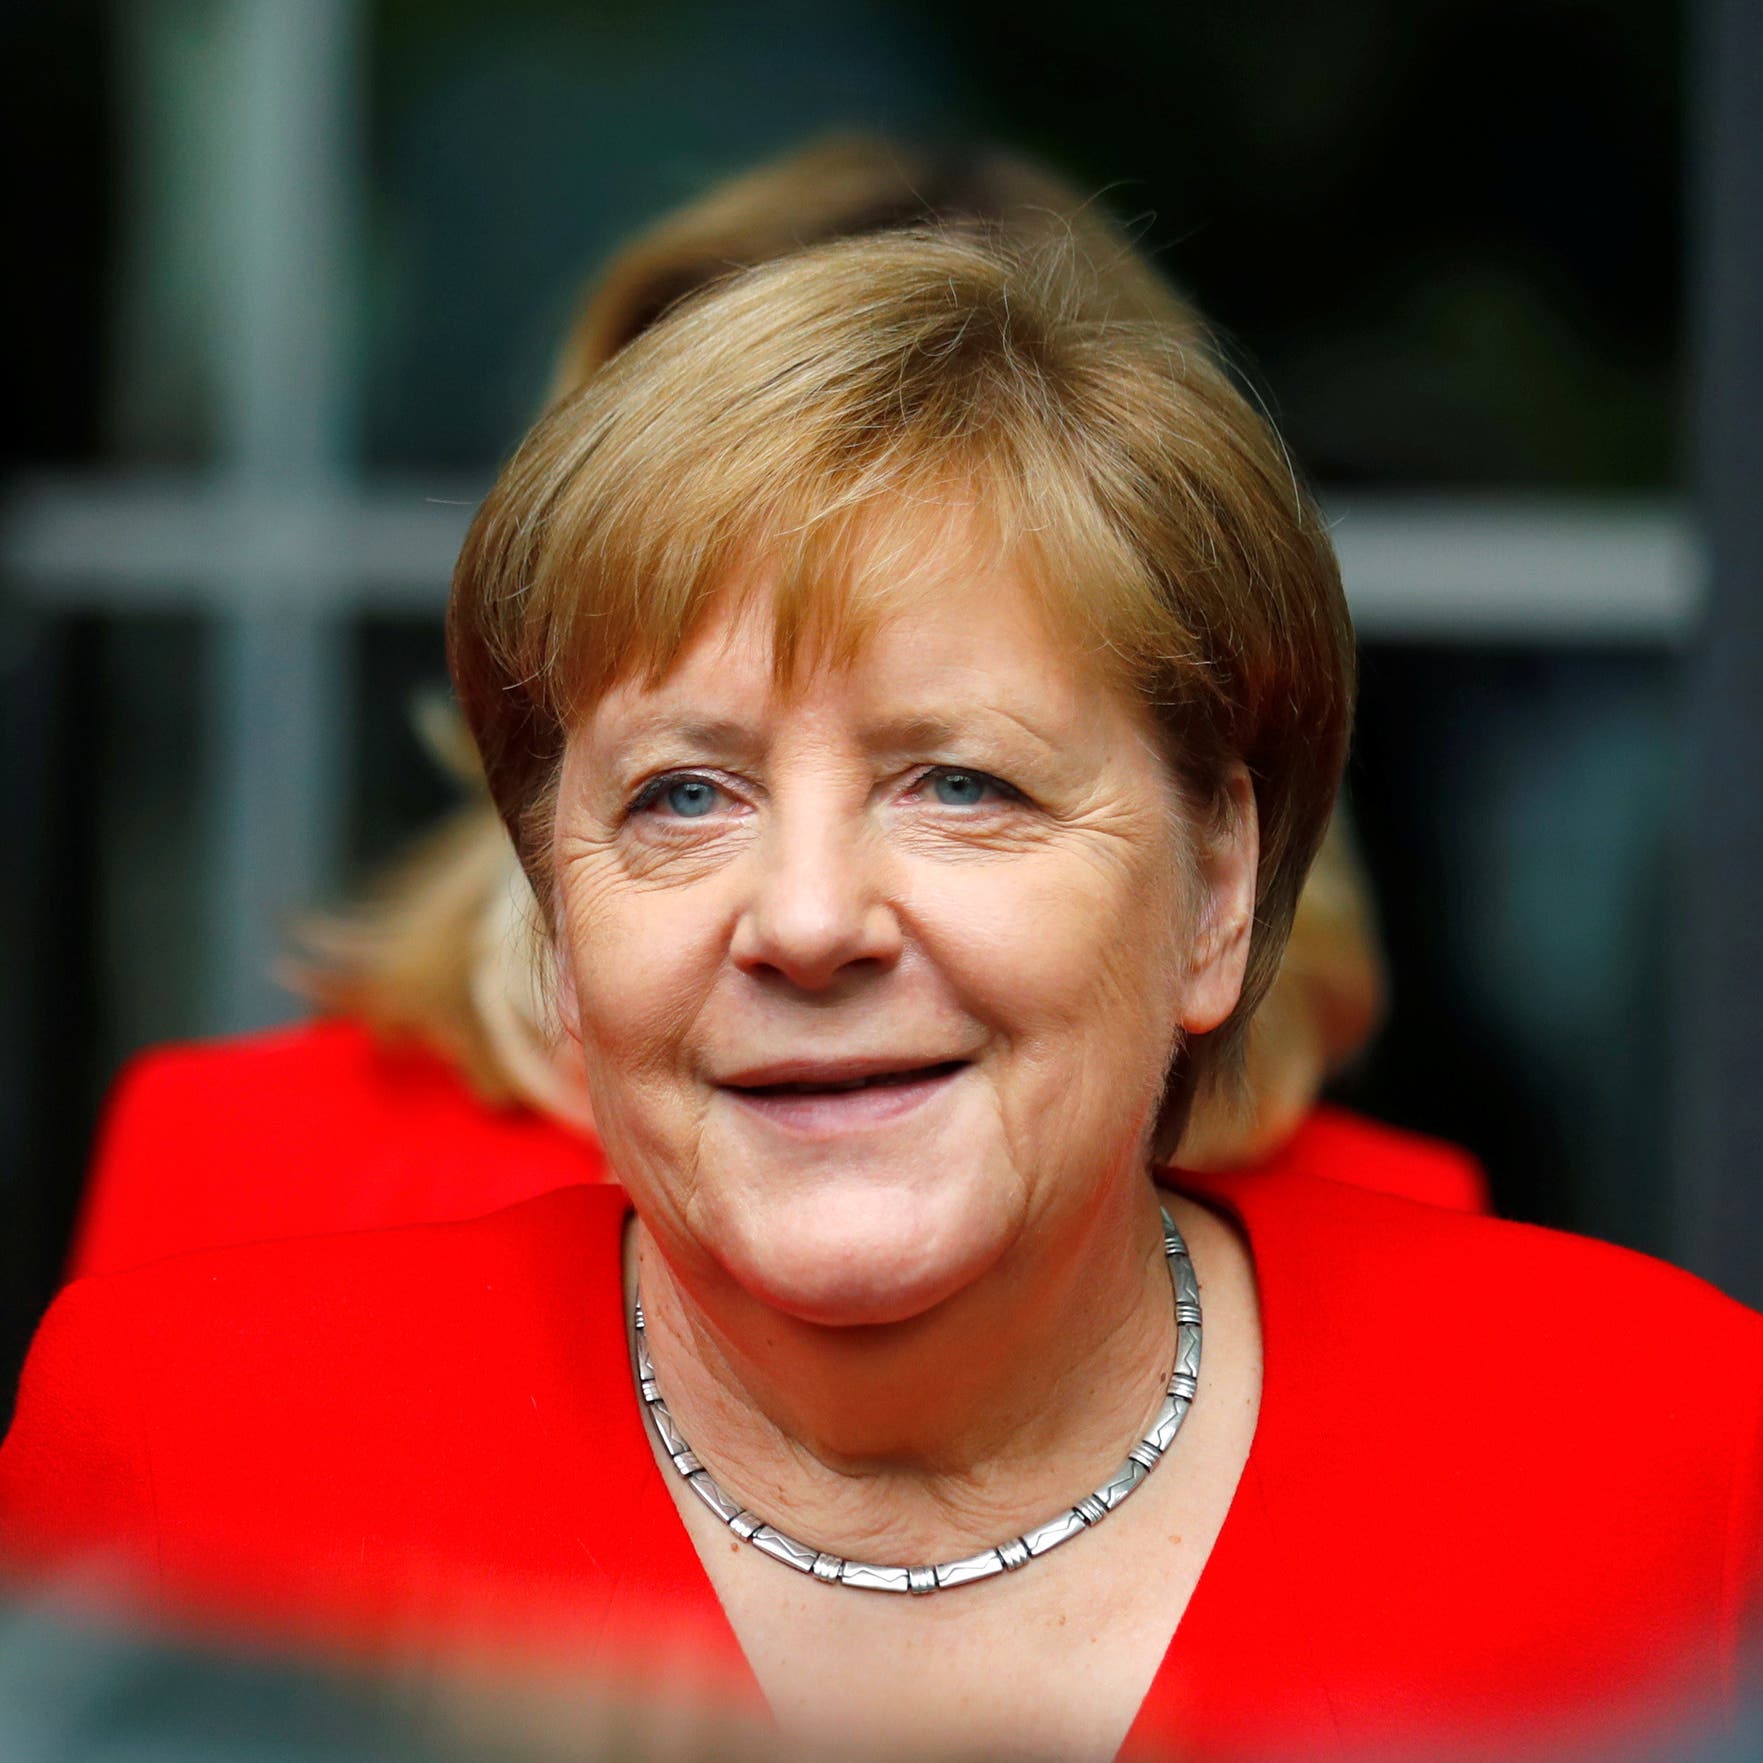 ميركل: ألمانيا مستعدة لزيادة مساهمتها بالميزانية الأوروبية